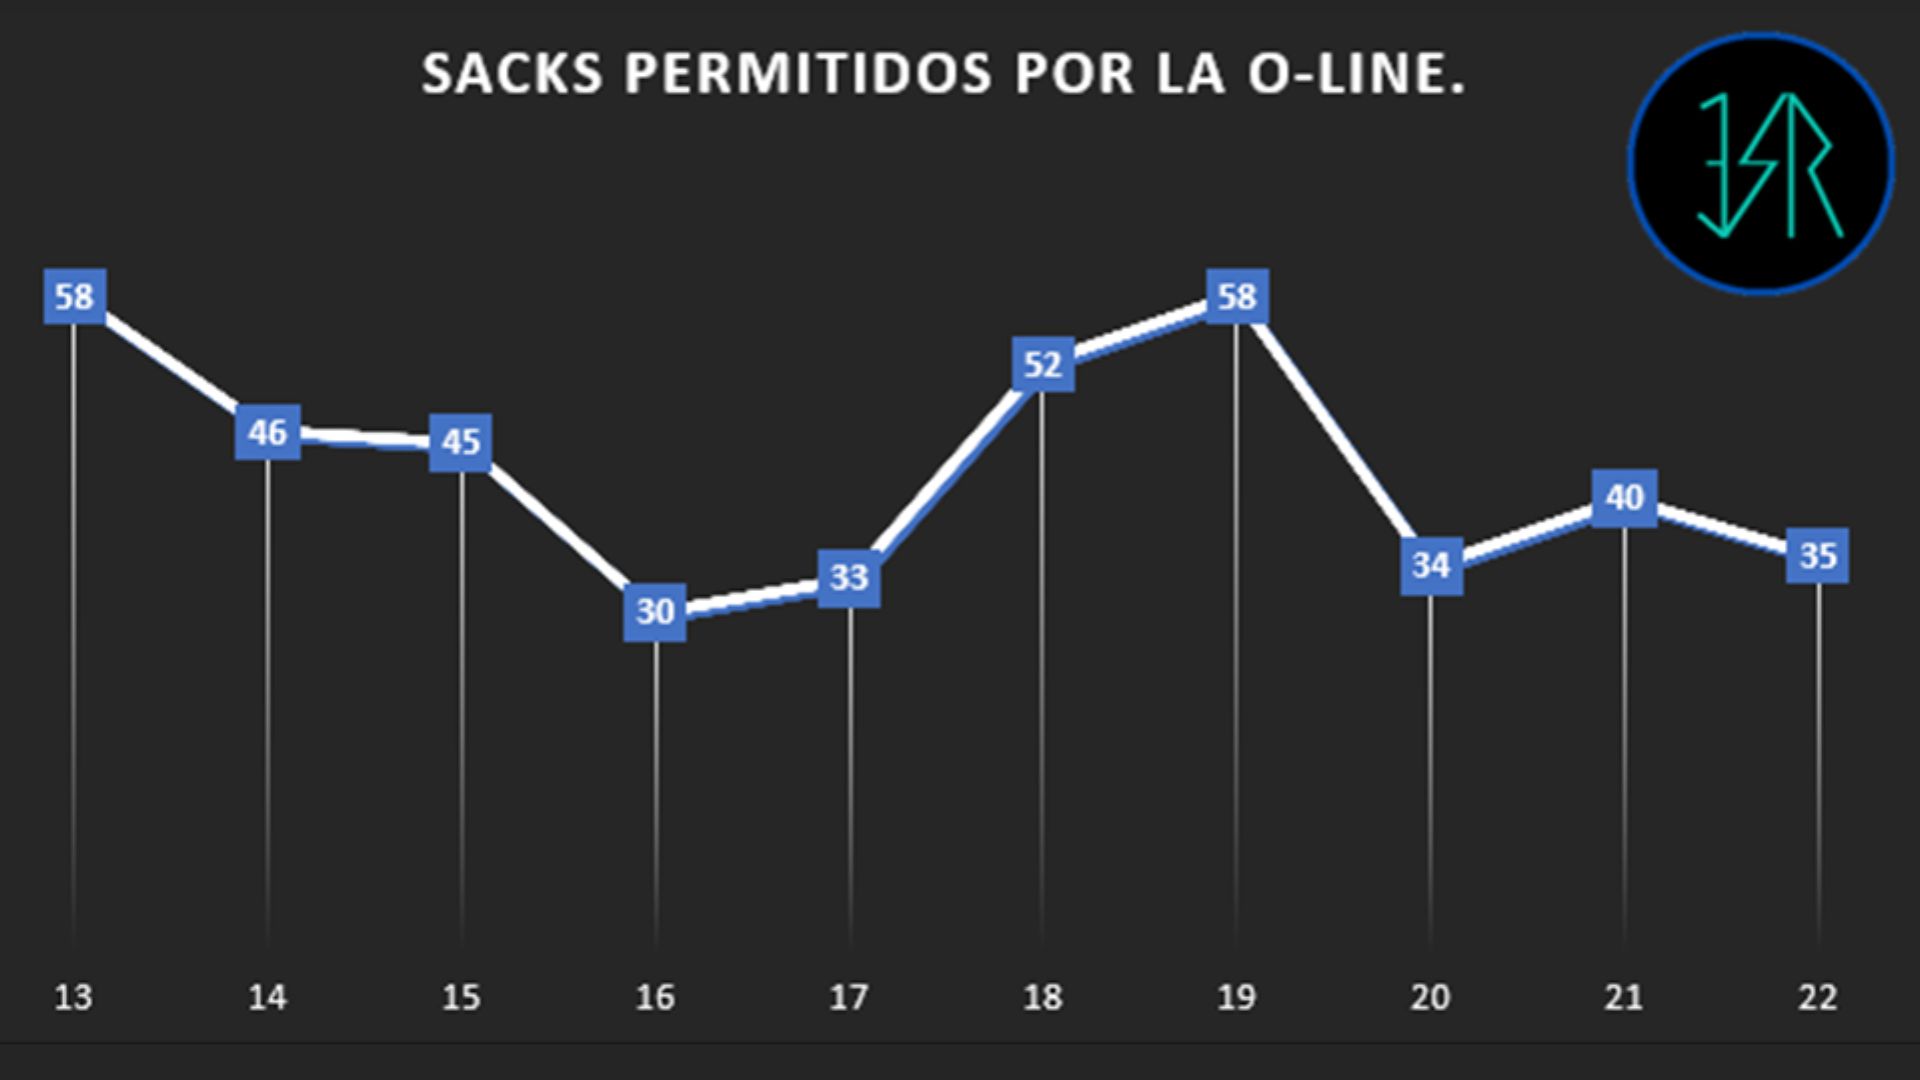 Sacks permitidos por la línea ofensiva de los Dolphins desde el 2013 hasta la temporada pasada